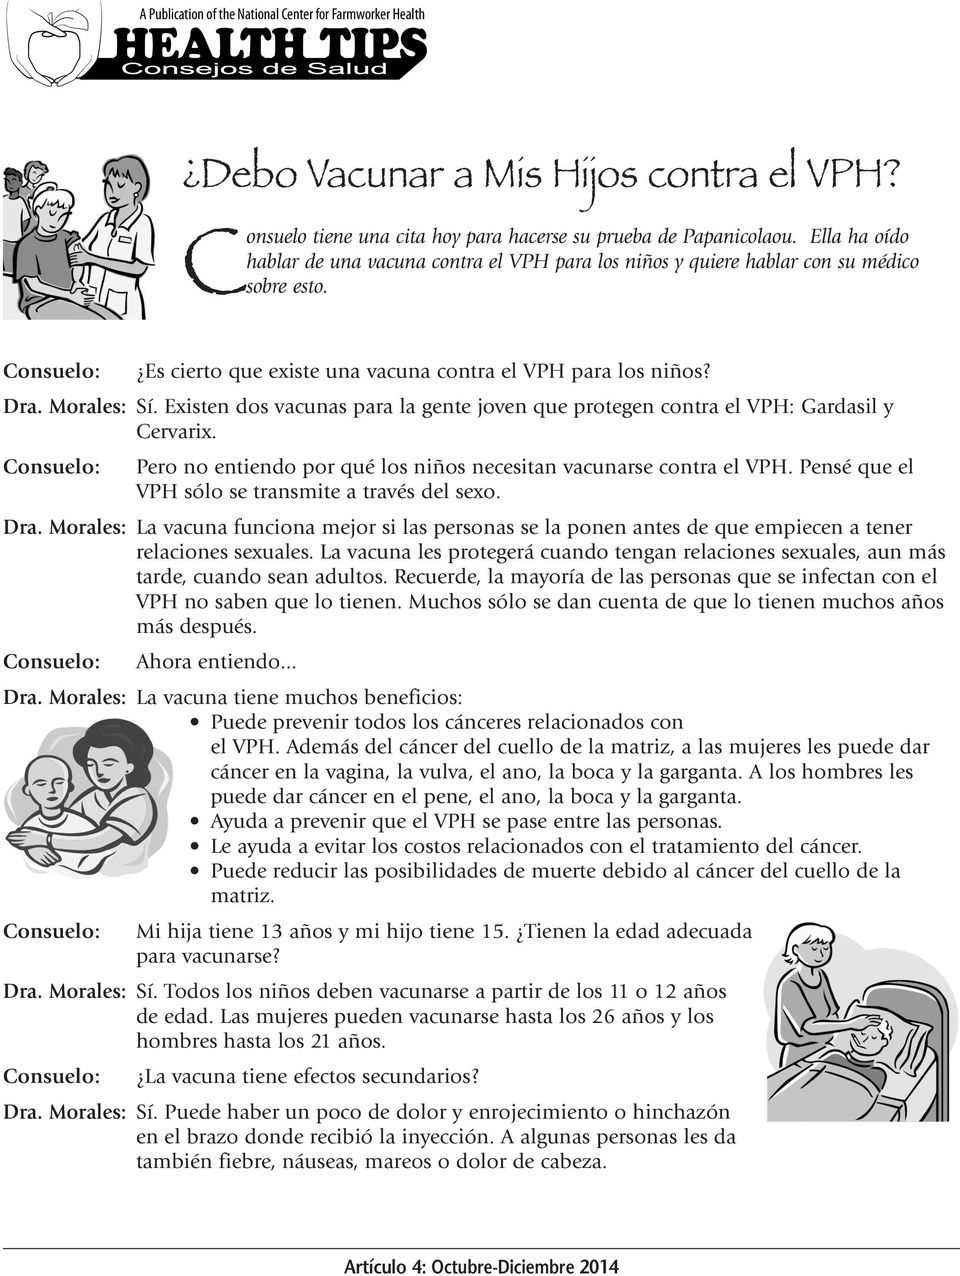 Existen dos vacunas para la gente joven que protegen contra el VPH: Gardasil y Cervarix. Consuelo: Pero no entiendo por qué los niños necesitan vacunarse contra el VPH.